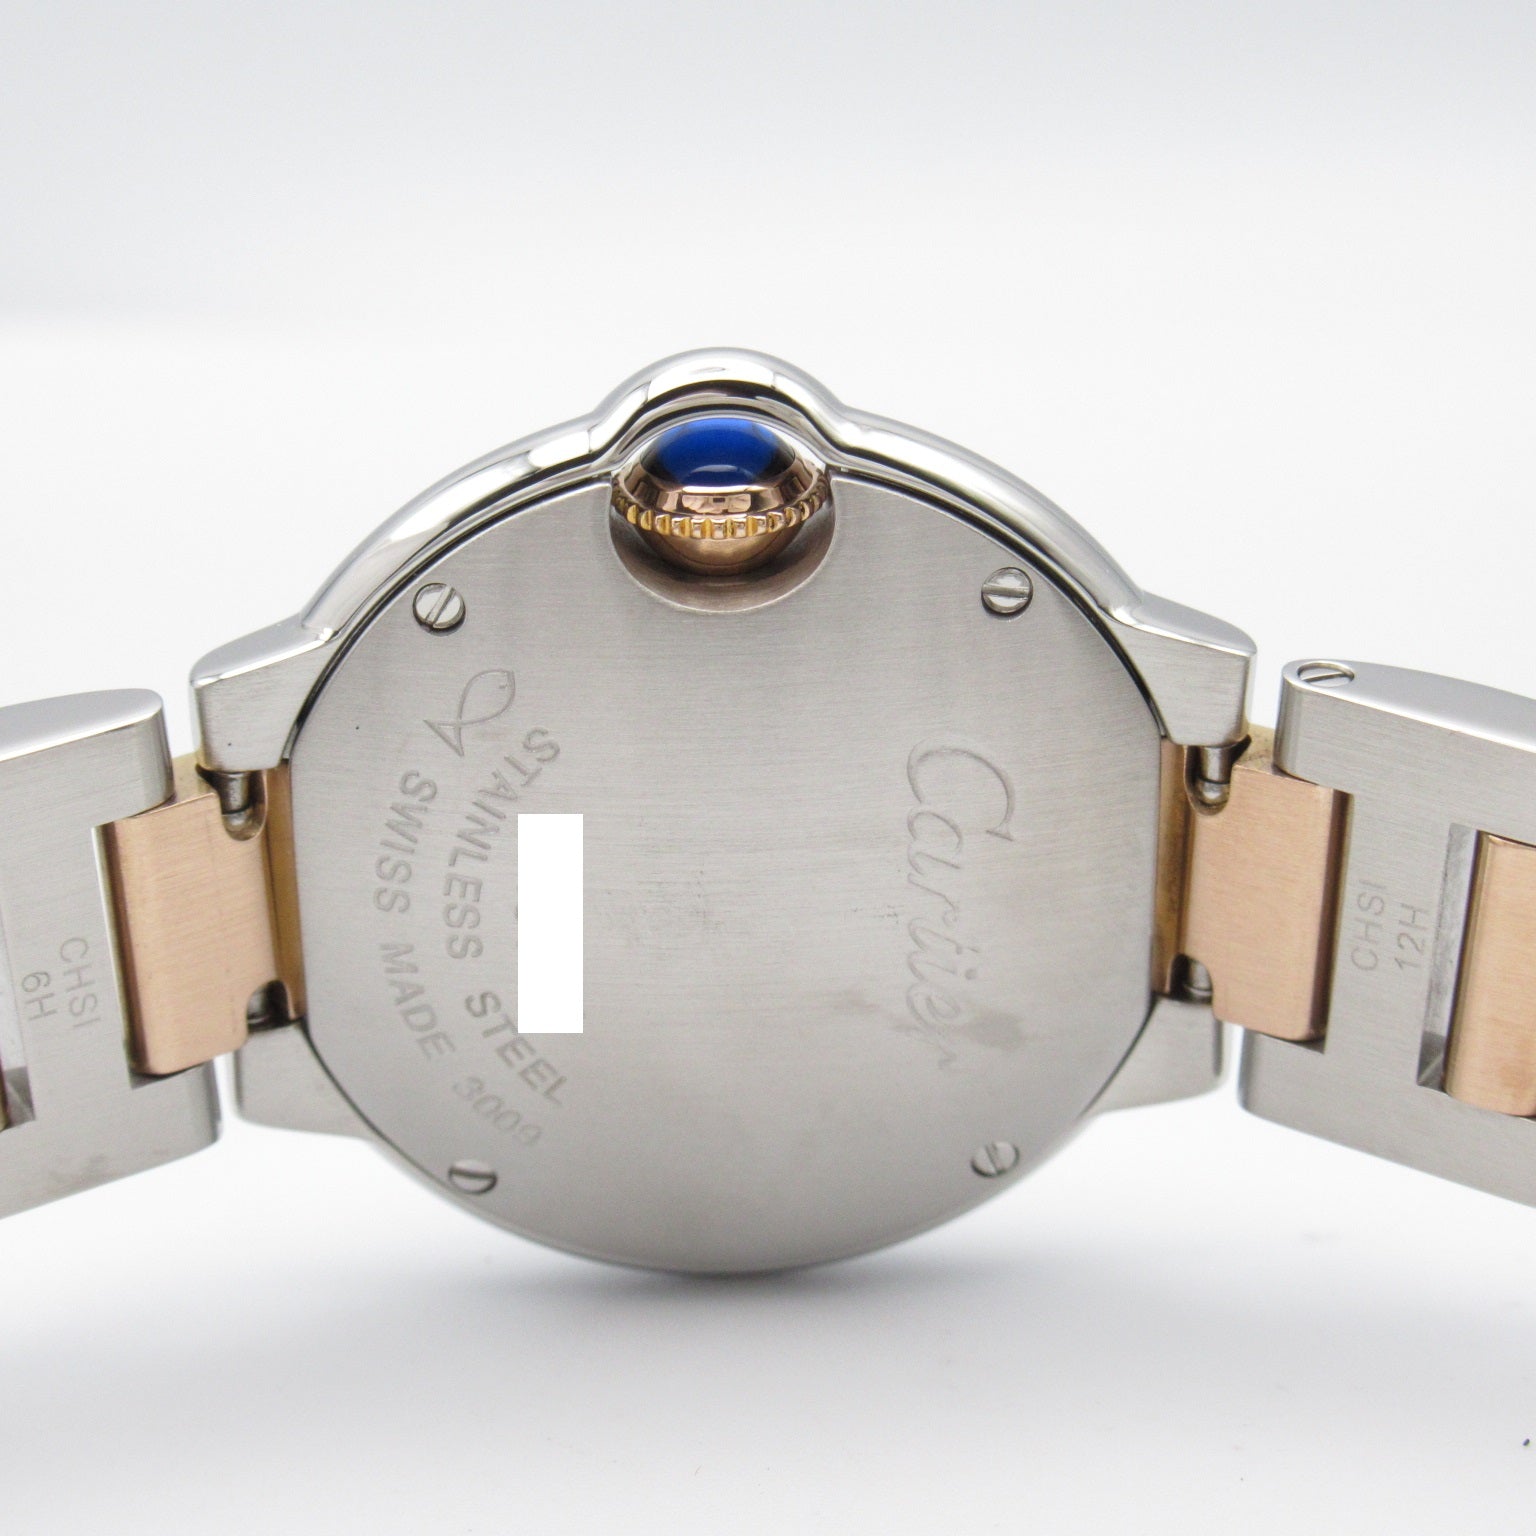 Cartier Cartier Ballon Blue SM 11P Diamond  Watch K18PG (Pink G) Stainless Steel  Silver  WE902030